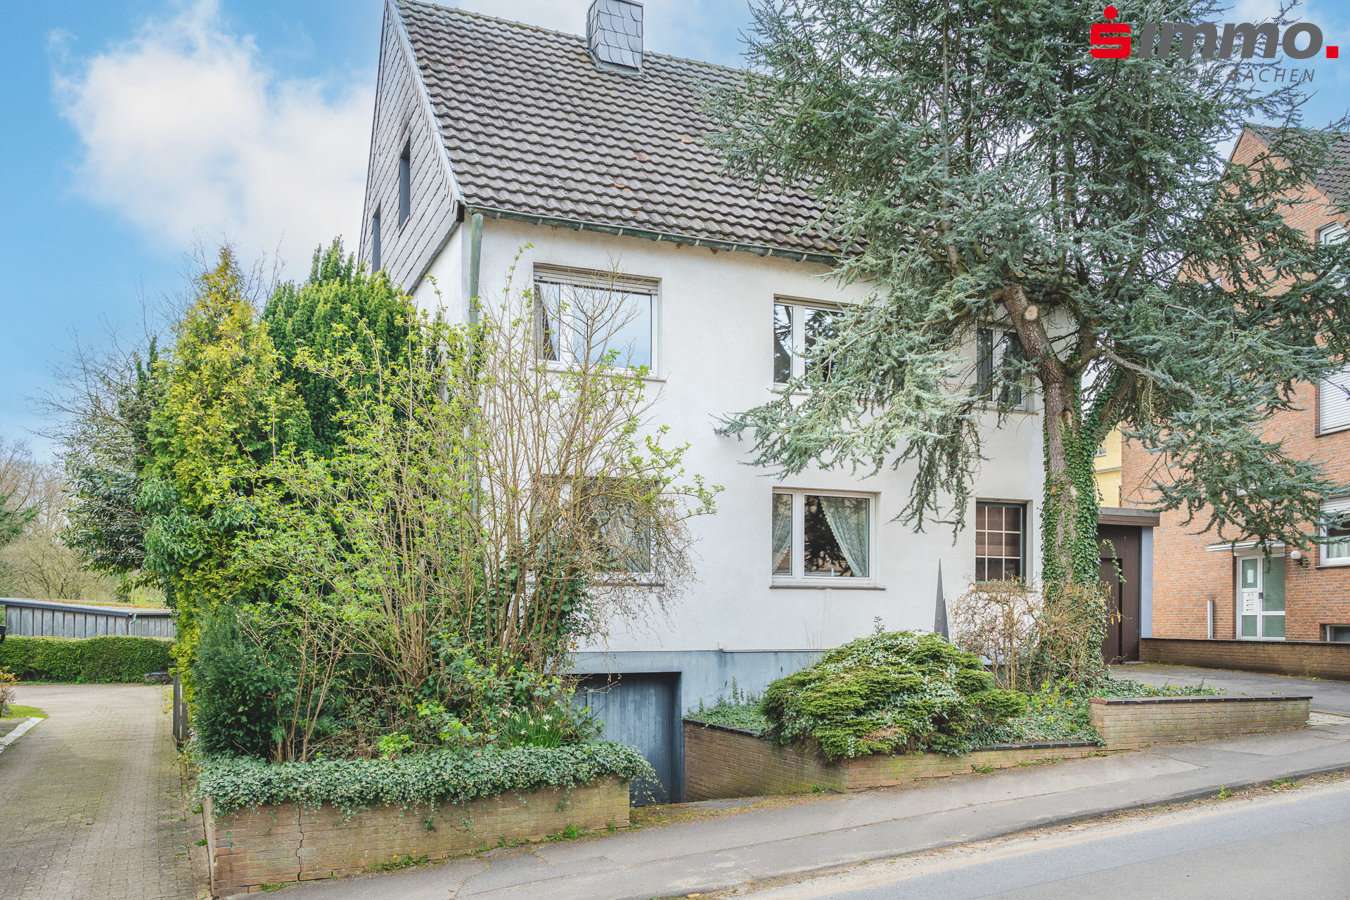 Frontansicht - Zweifamilienhaus in 52076 Aachen mit 209m² kaufen